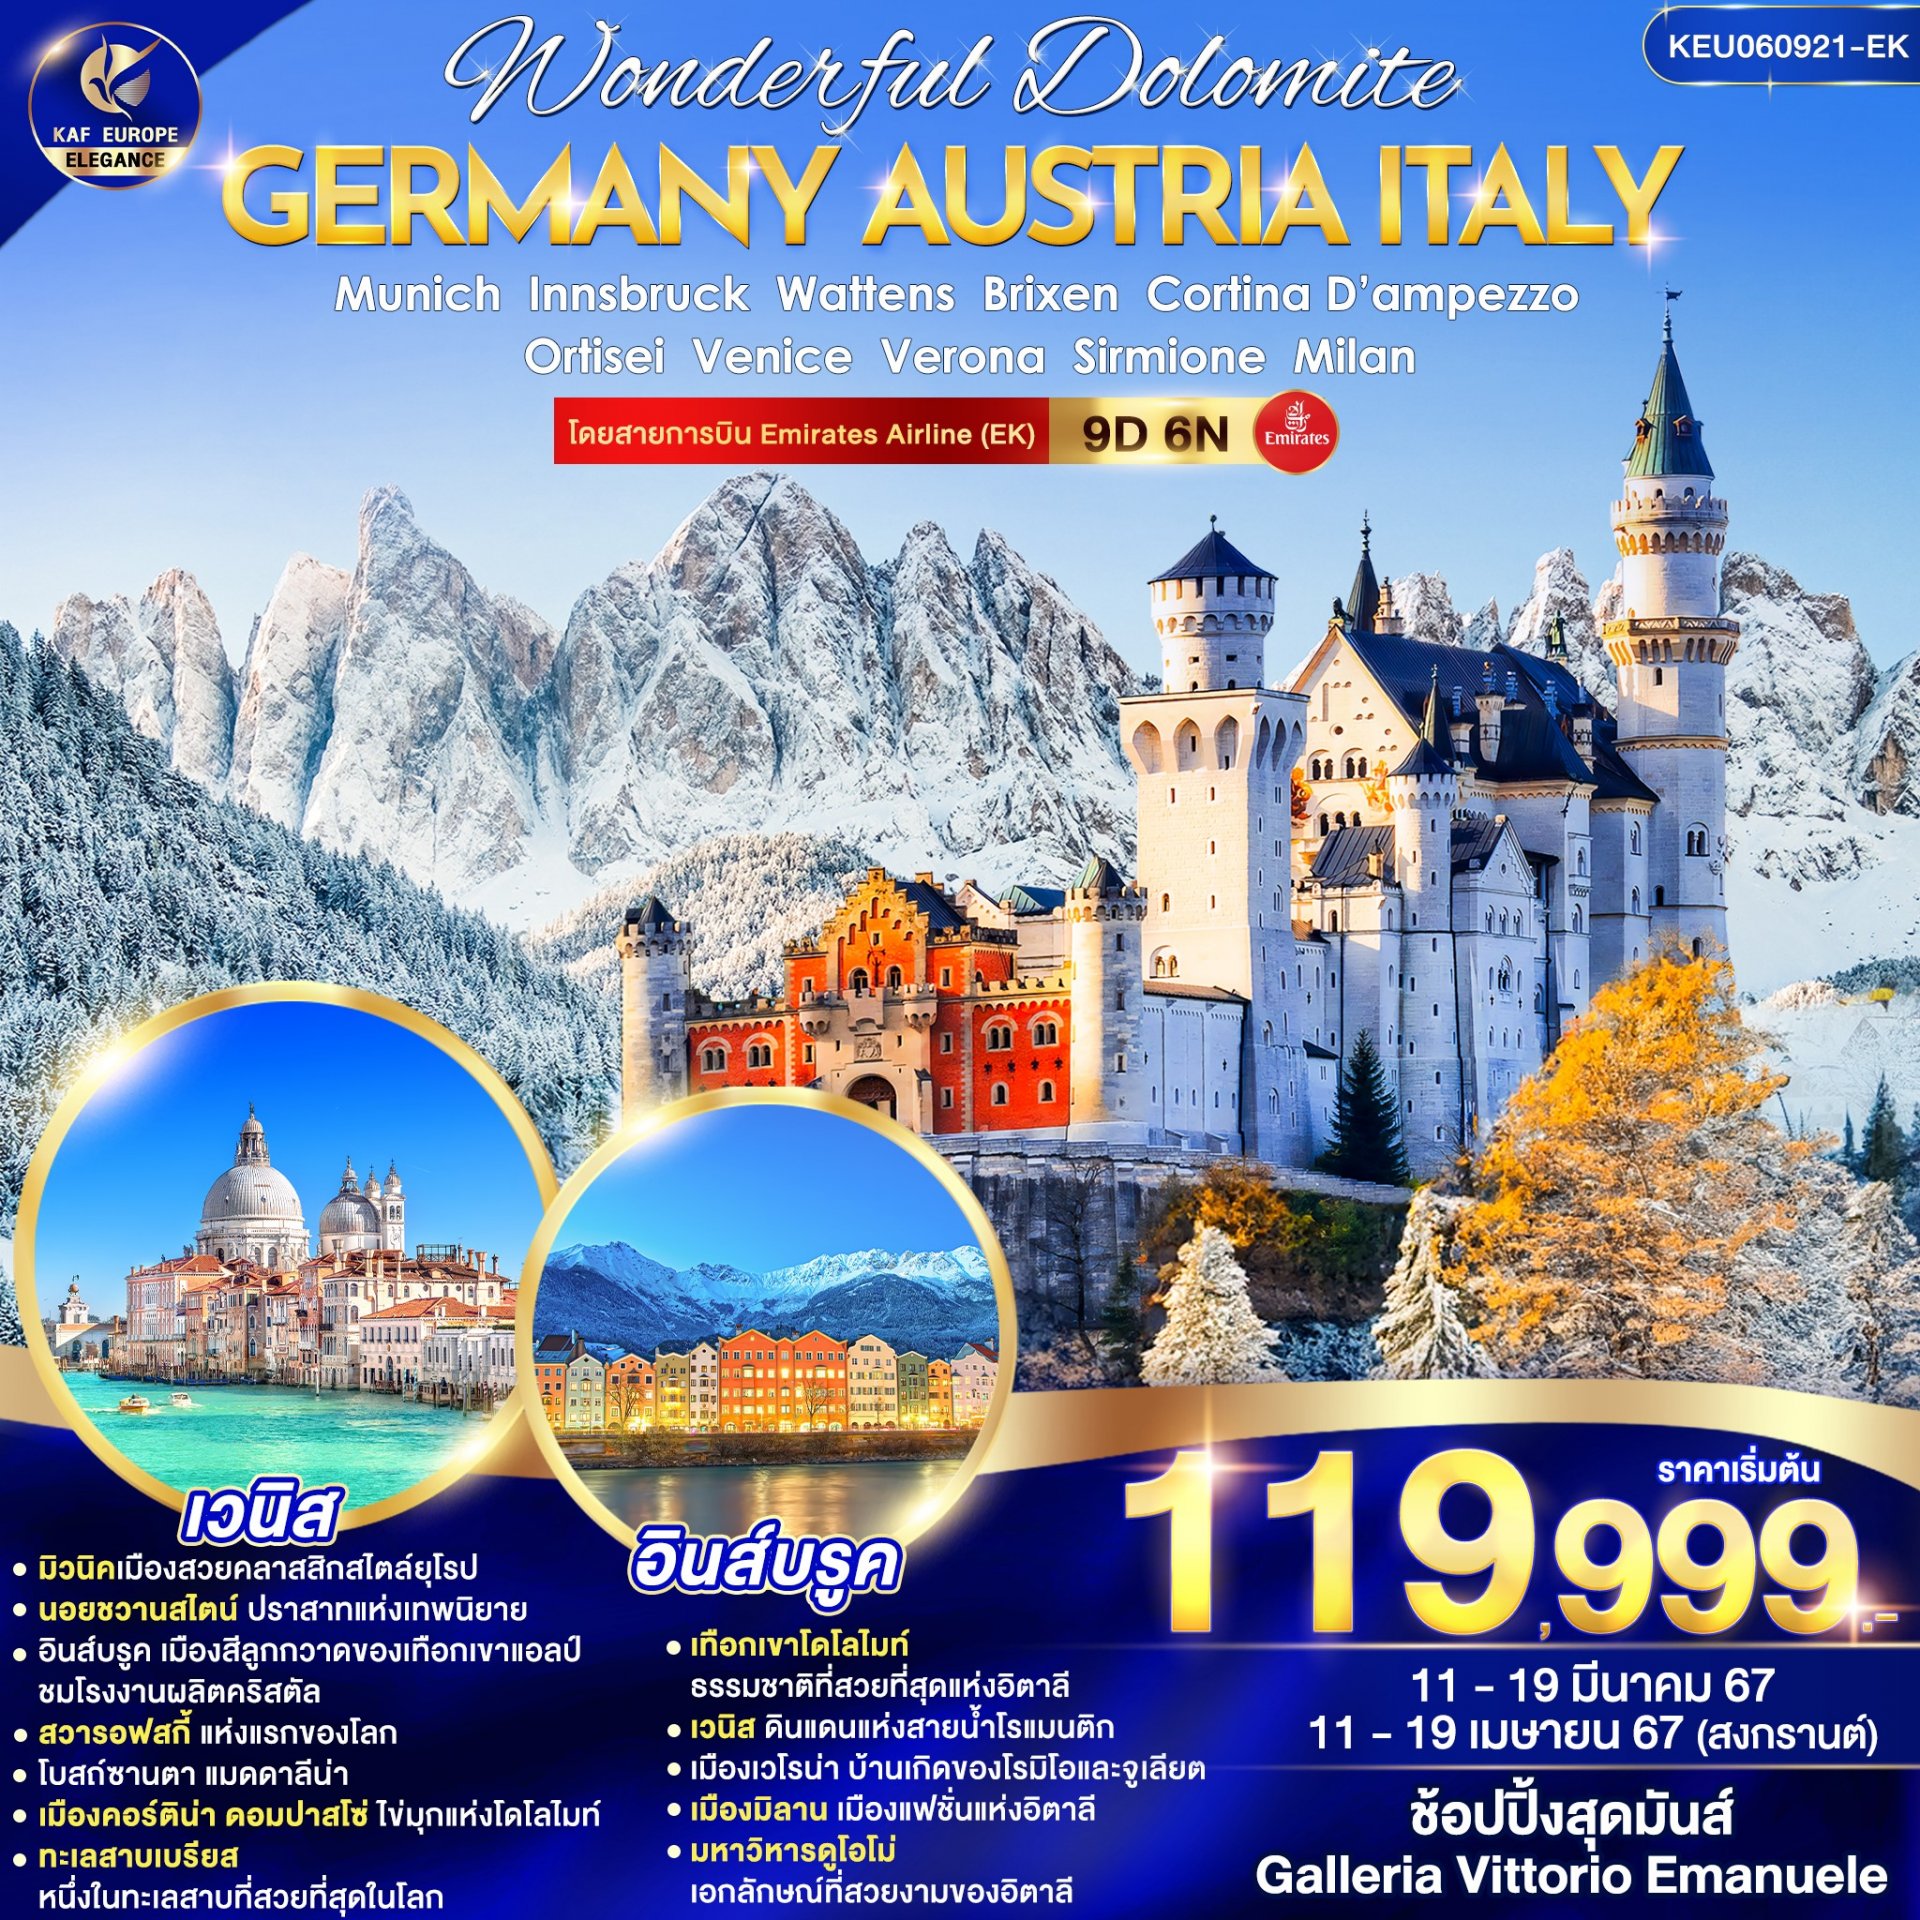 ทัวร์ยุโรป KEU060921-EK Wonderful Dolomite Germany Austria Italy